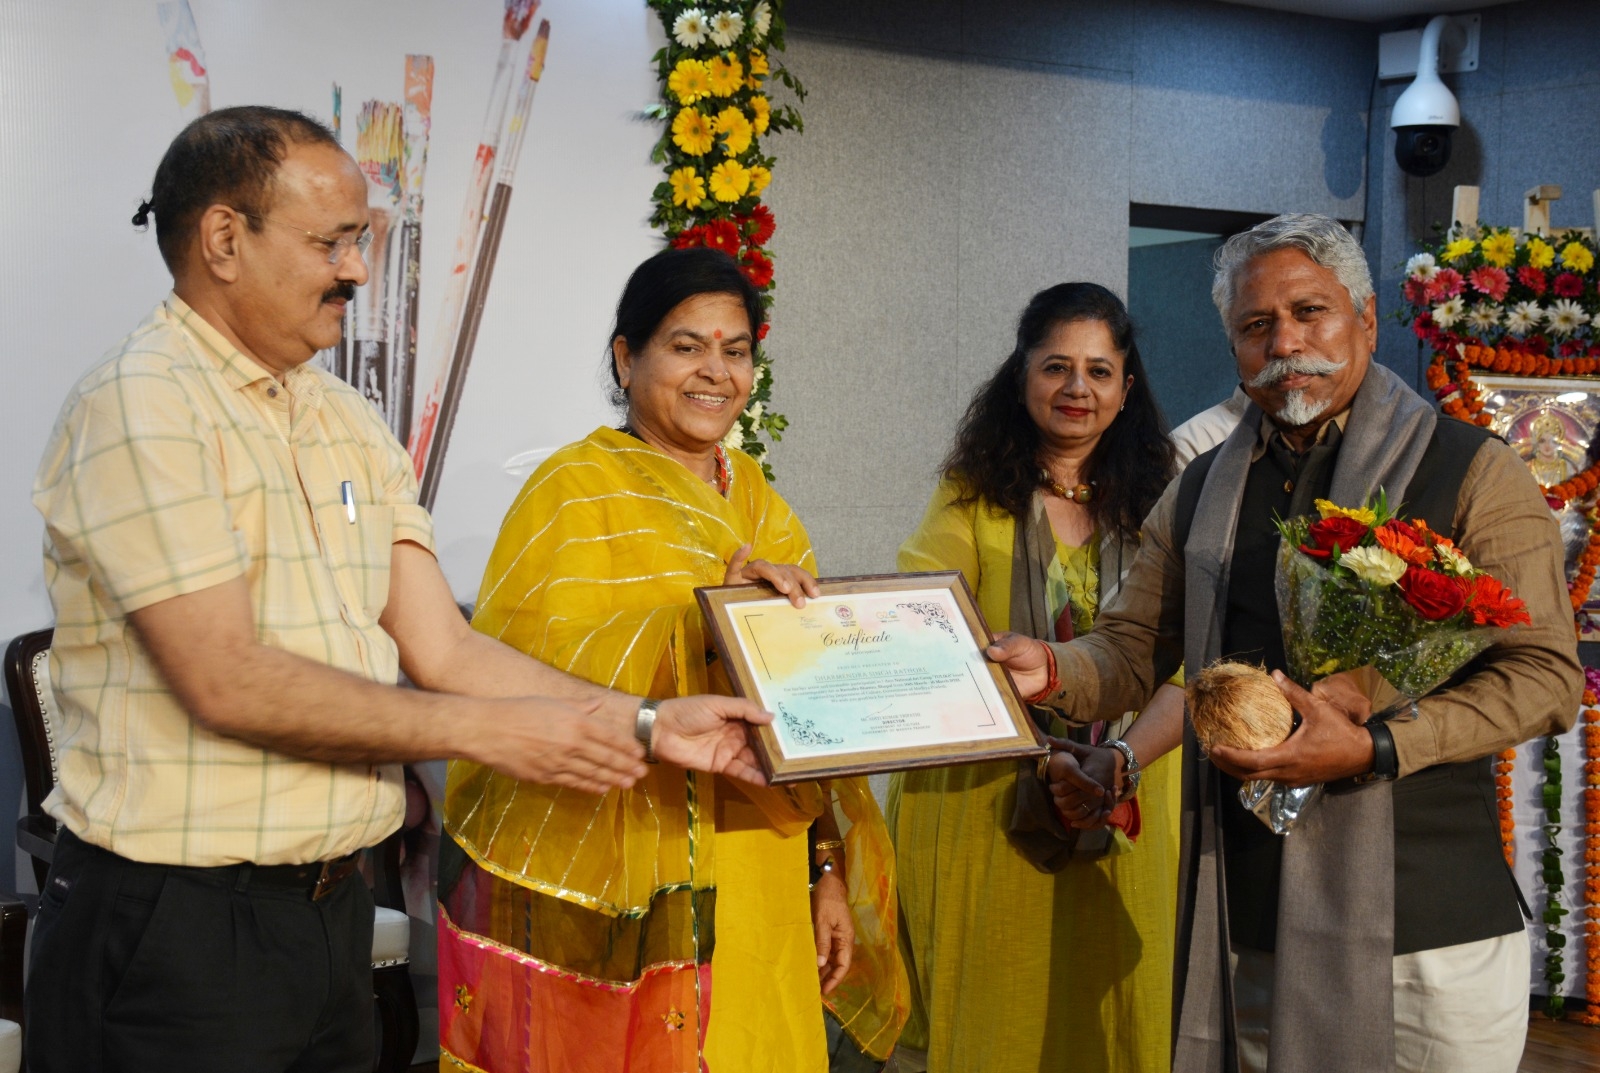 bhopal culture news- 21वीं शताब्दी में भारत निर्माण में चित्रकार एवं कलाकार
सामर्थ को समर्पित करें: मंत्री उषा ठाकुर